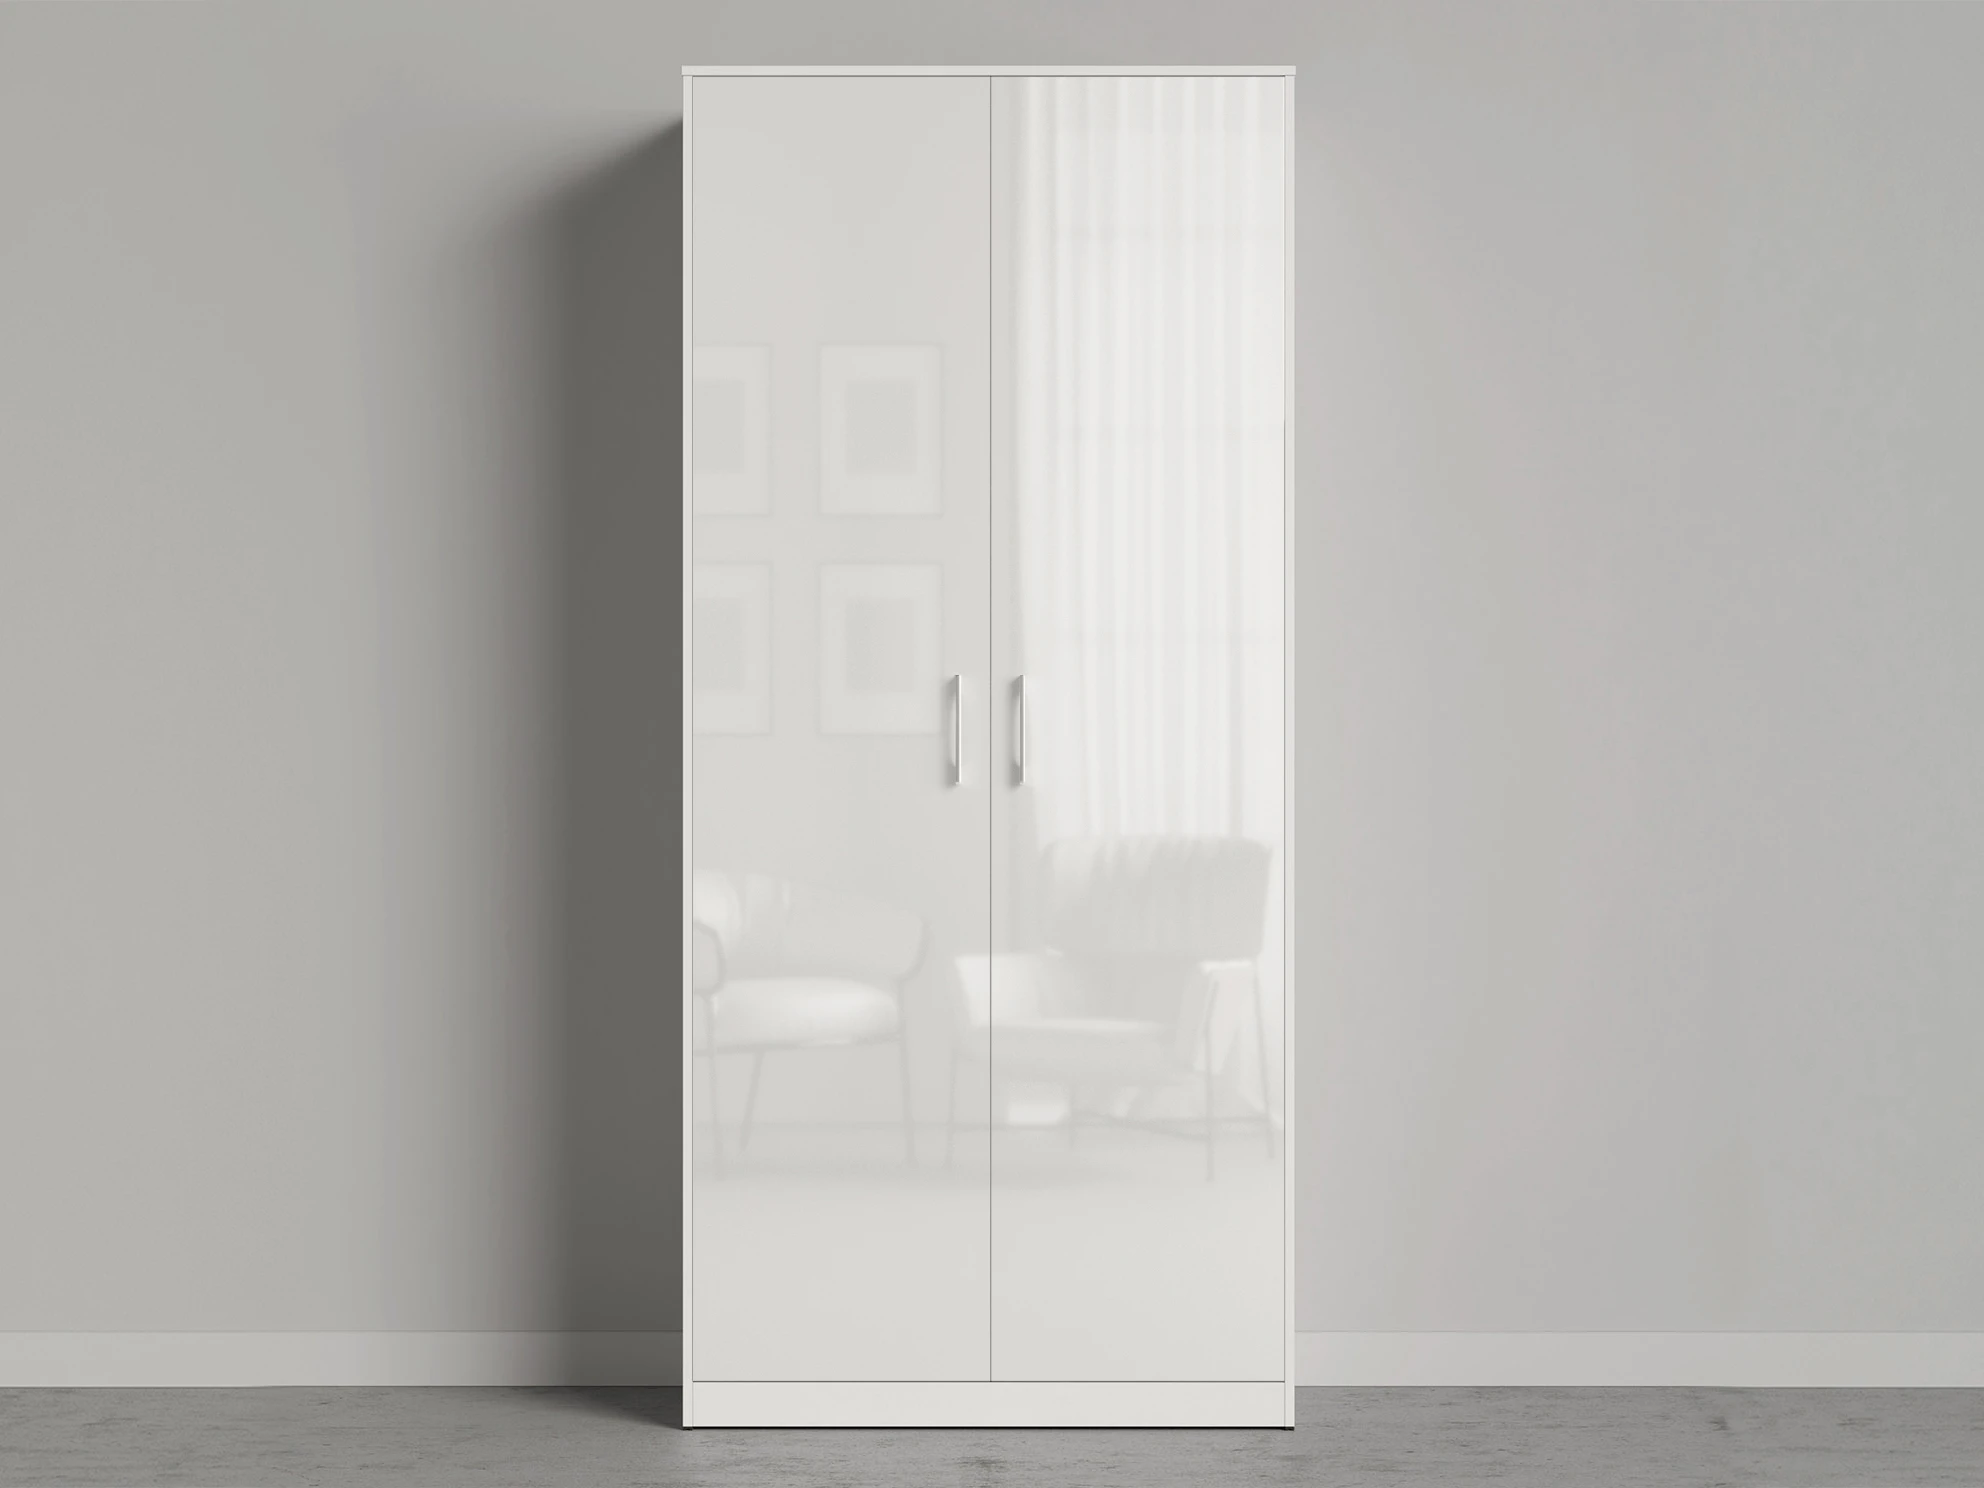 1 Cabinet 100 cm (Standard 45 cm depth) White / White Gloss